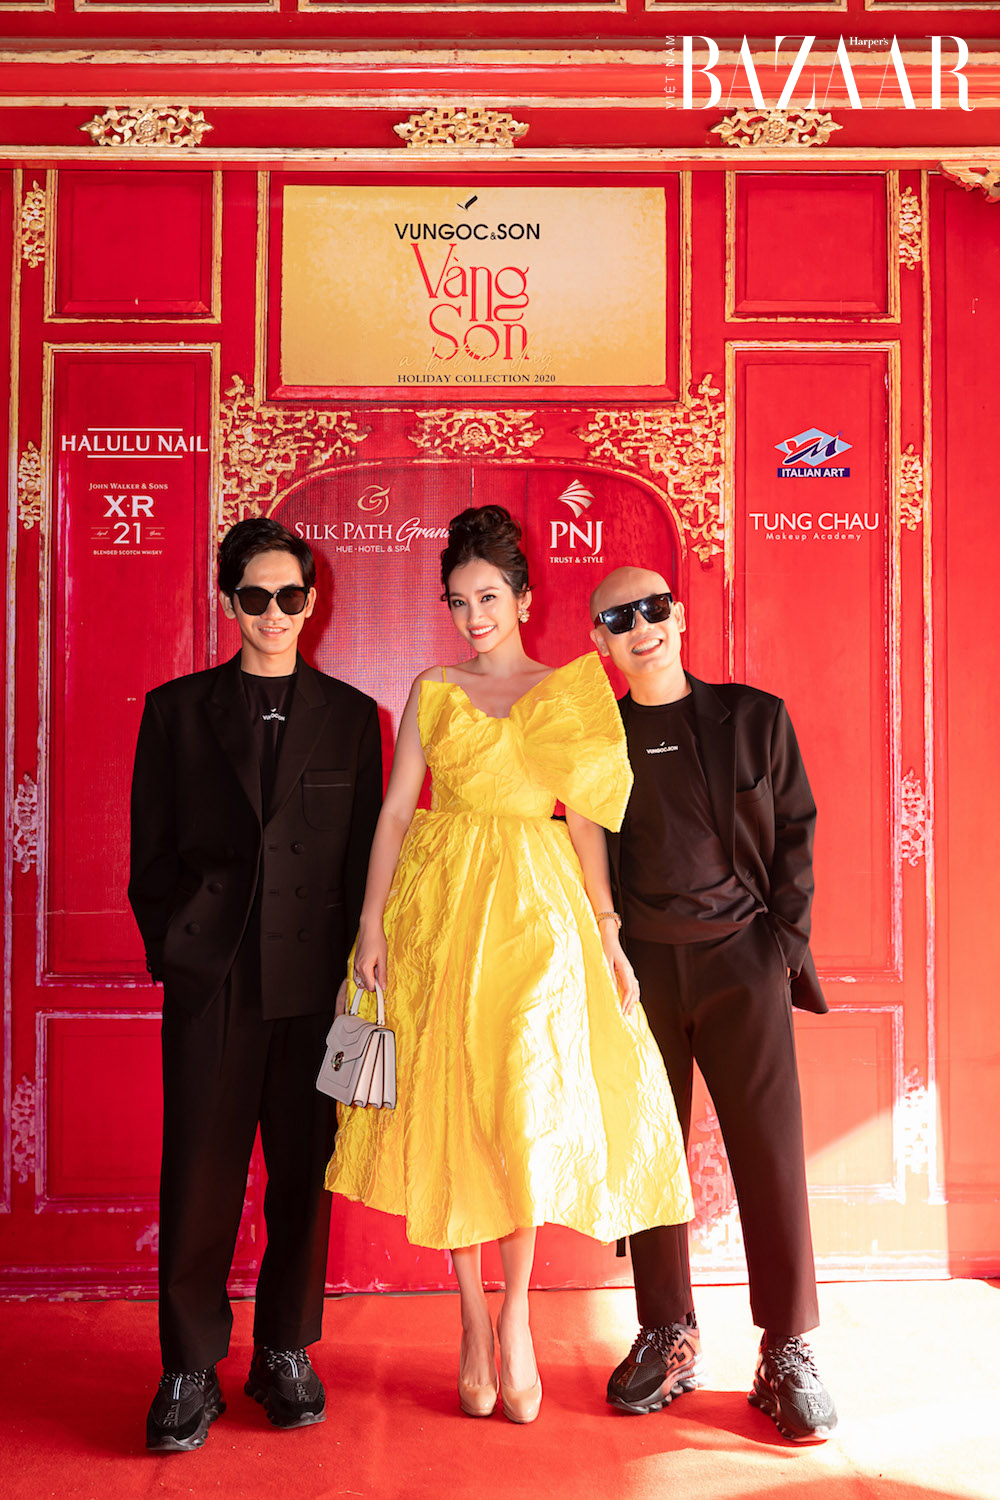 Sao Việt tề tựu tại Kinh thành Huế, tham dự show VUNGOC&SON